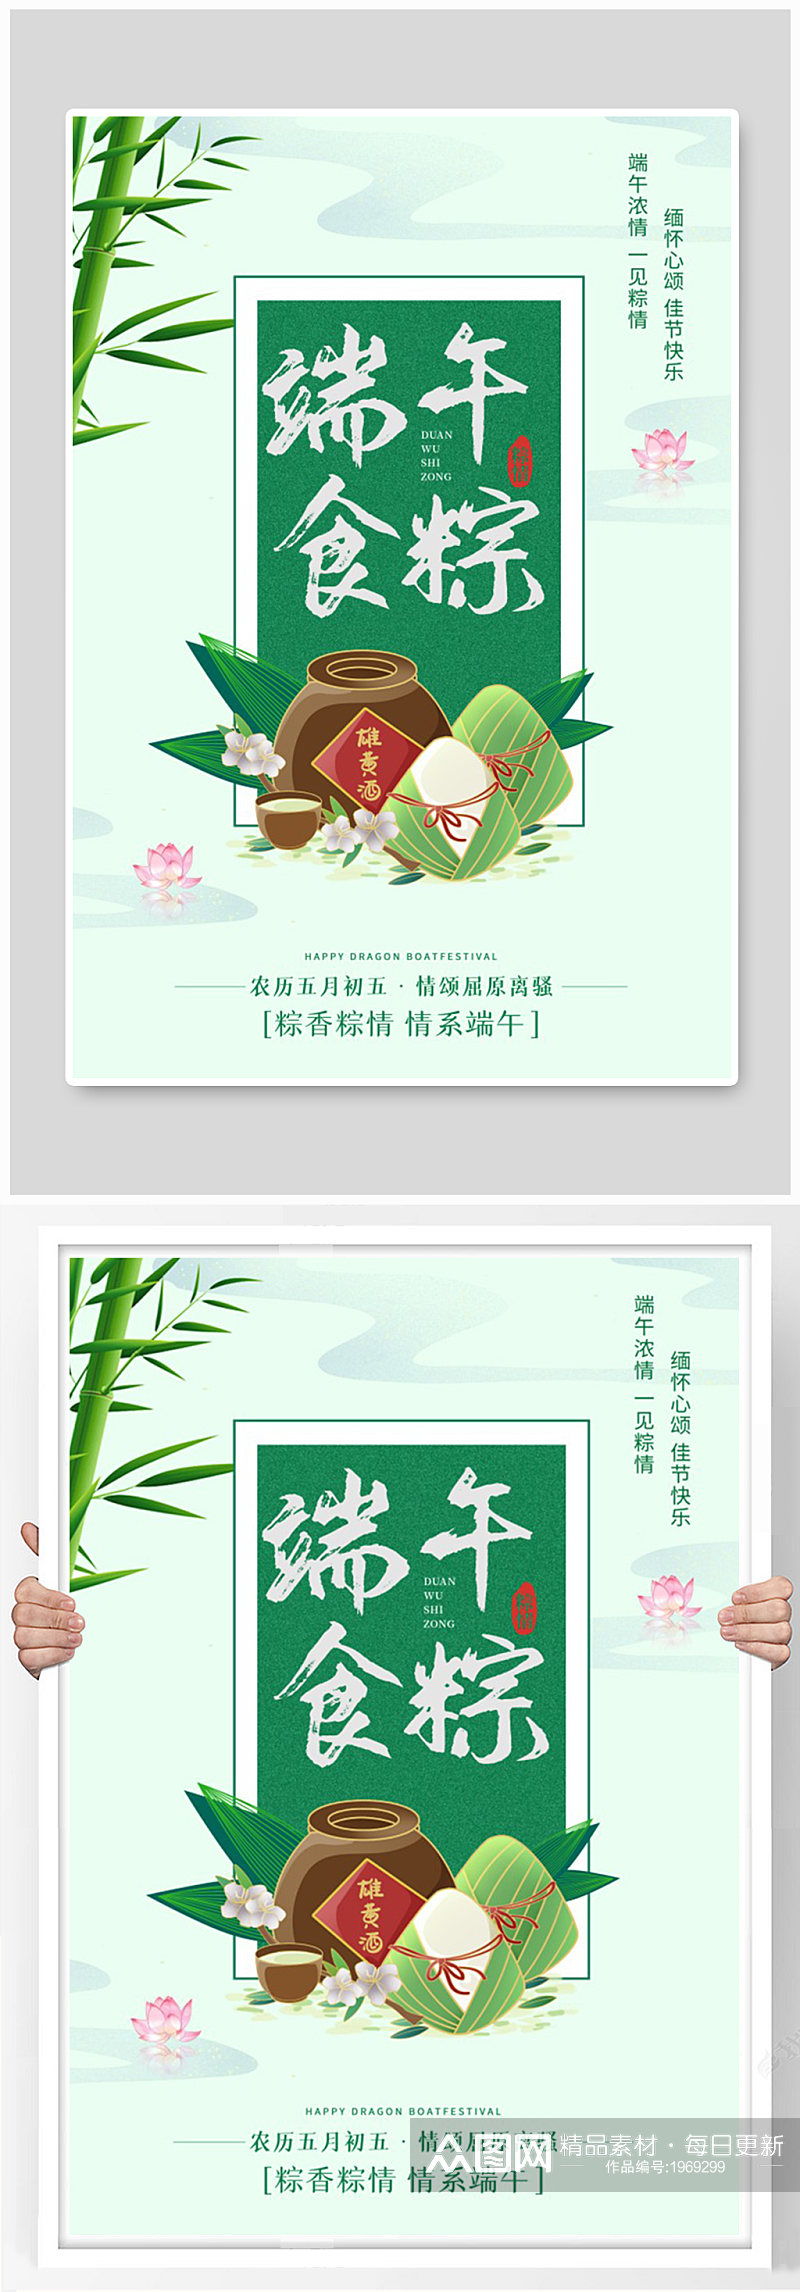 绿色中国风端午节粽子雄黄酒海报素材